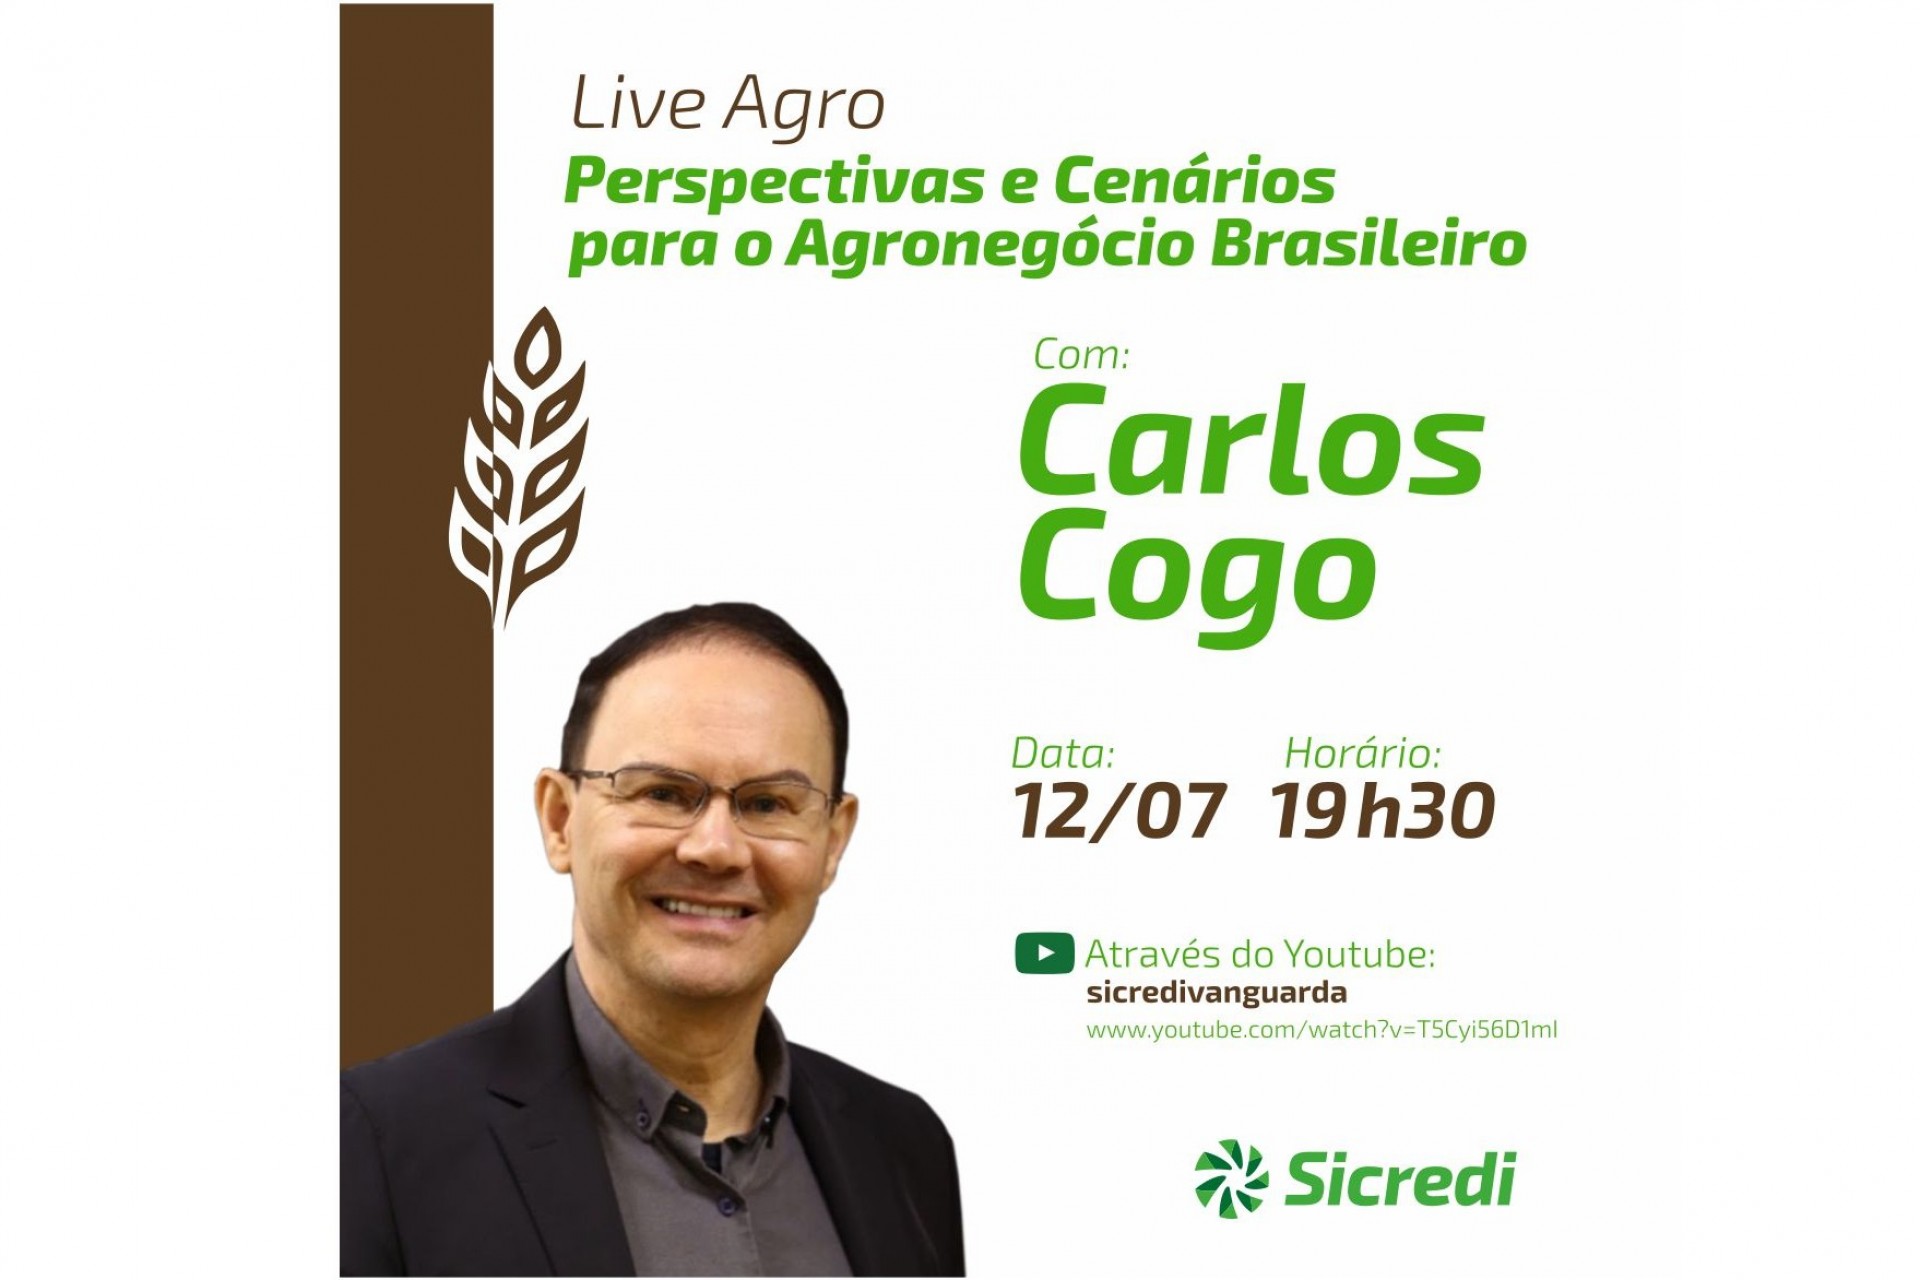 Sicredi Vanguarda realiza live voltada ao agronegócio